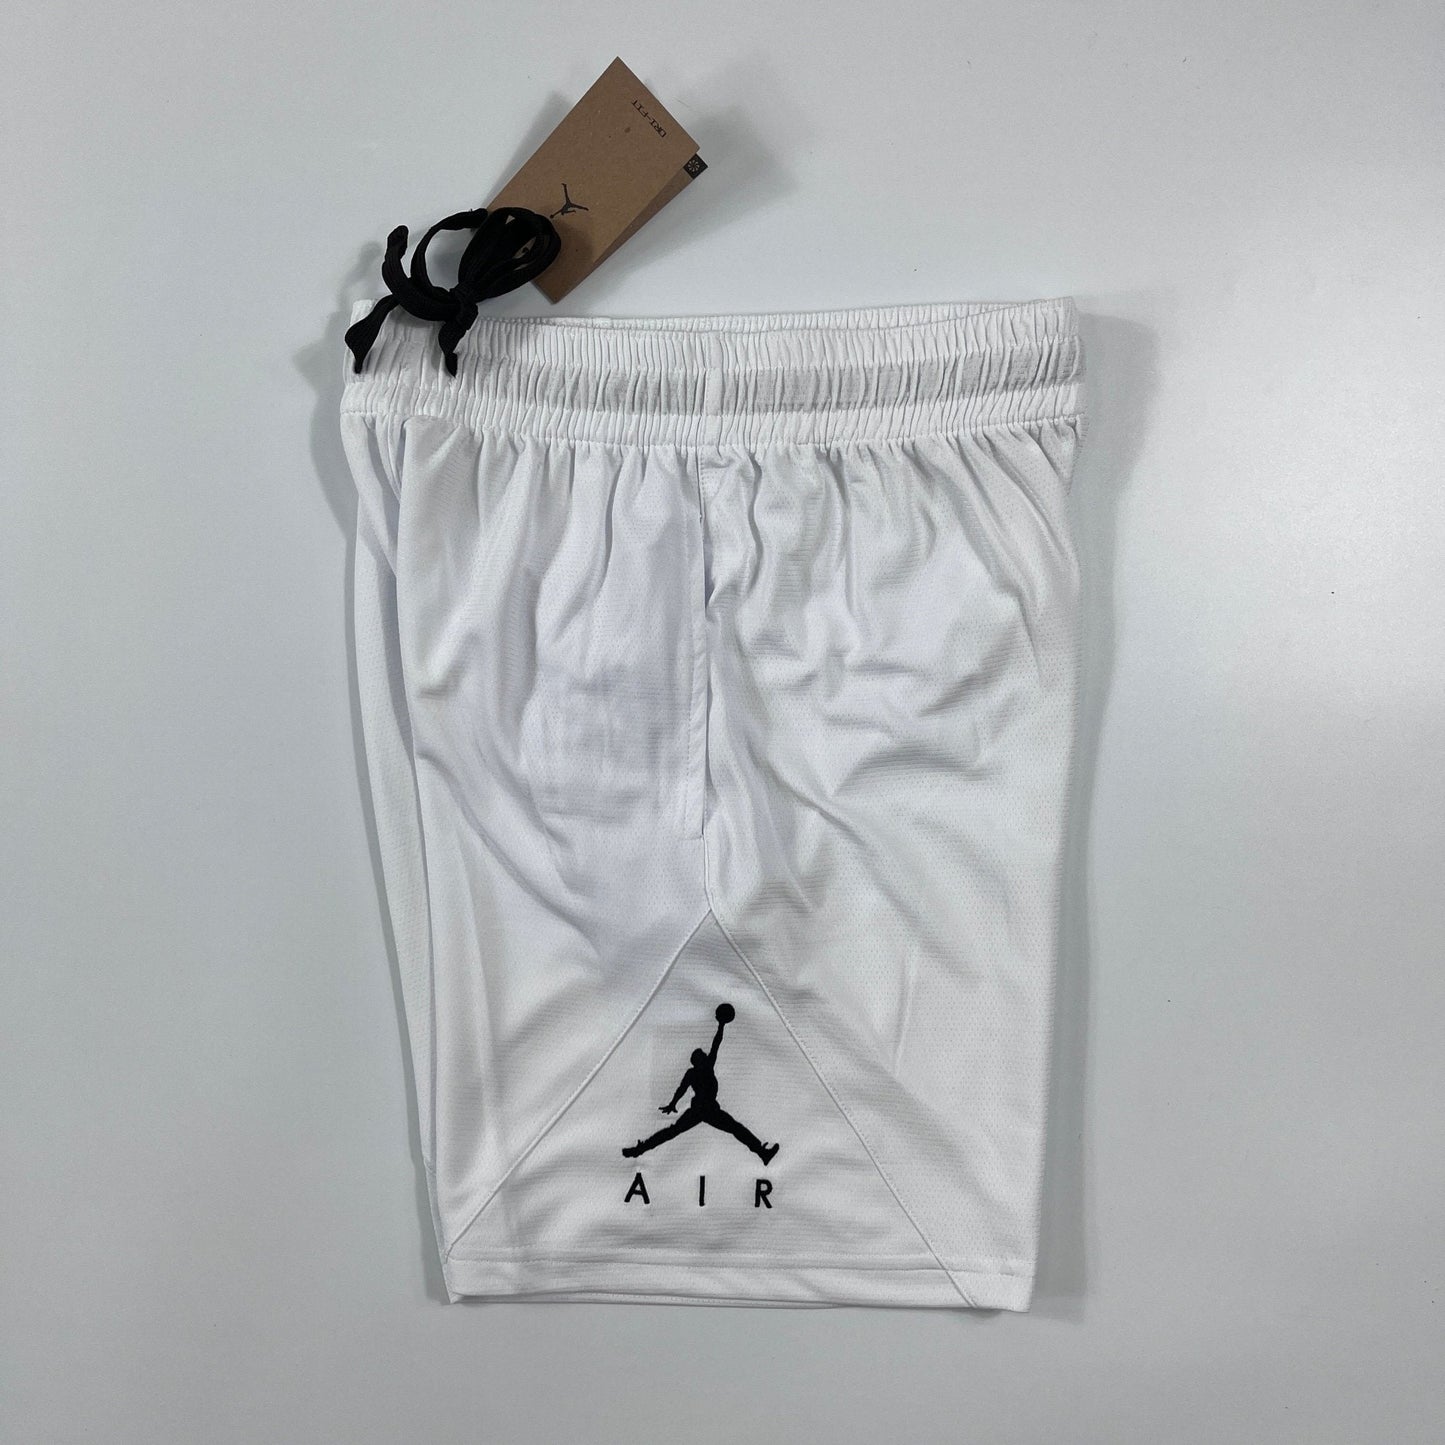 Shorts Jordan branco